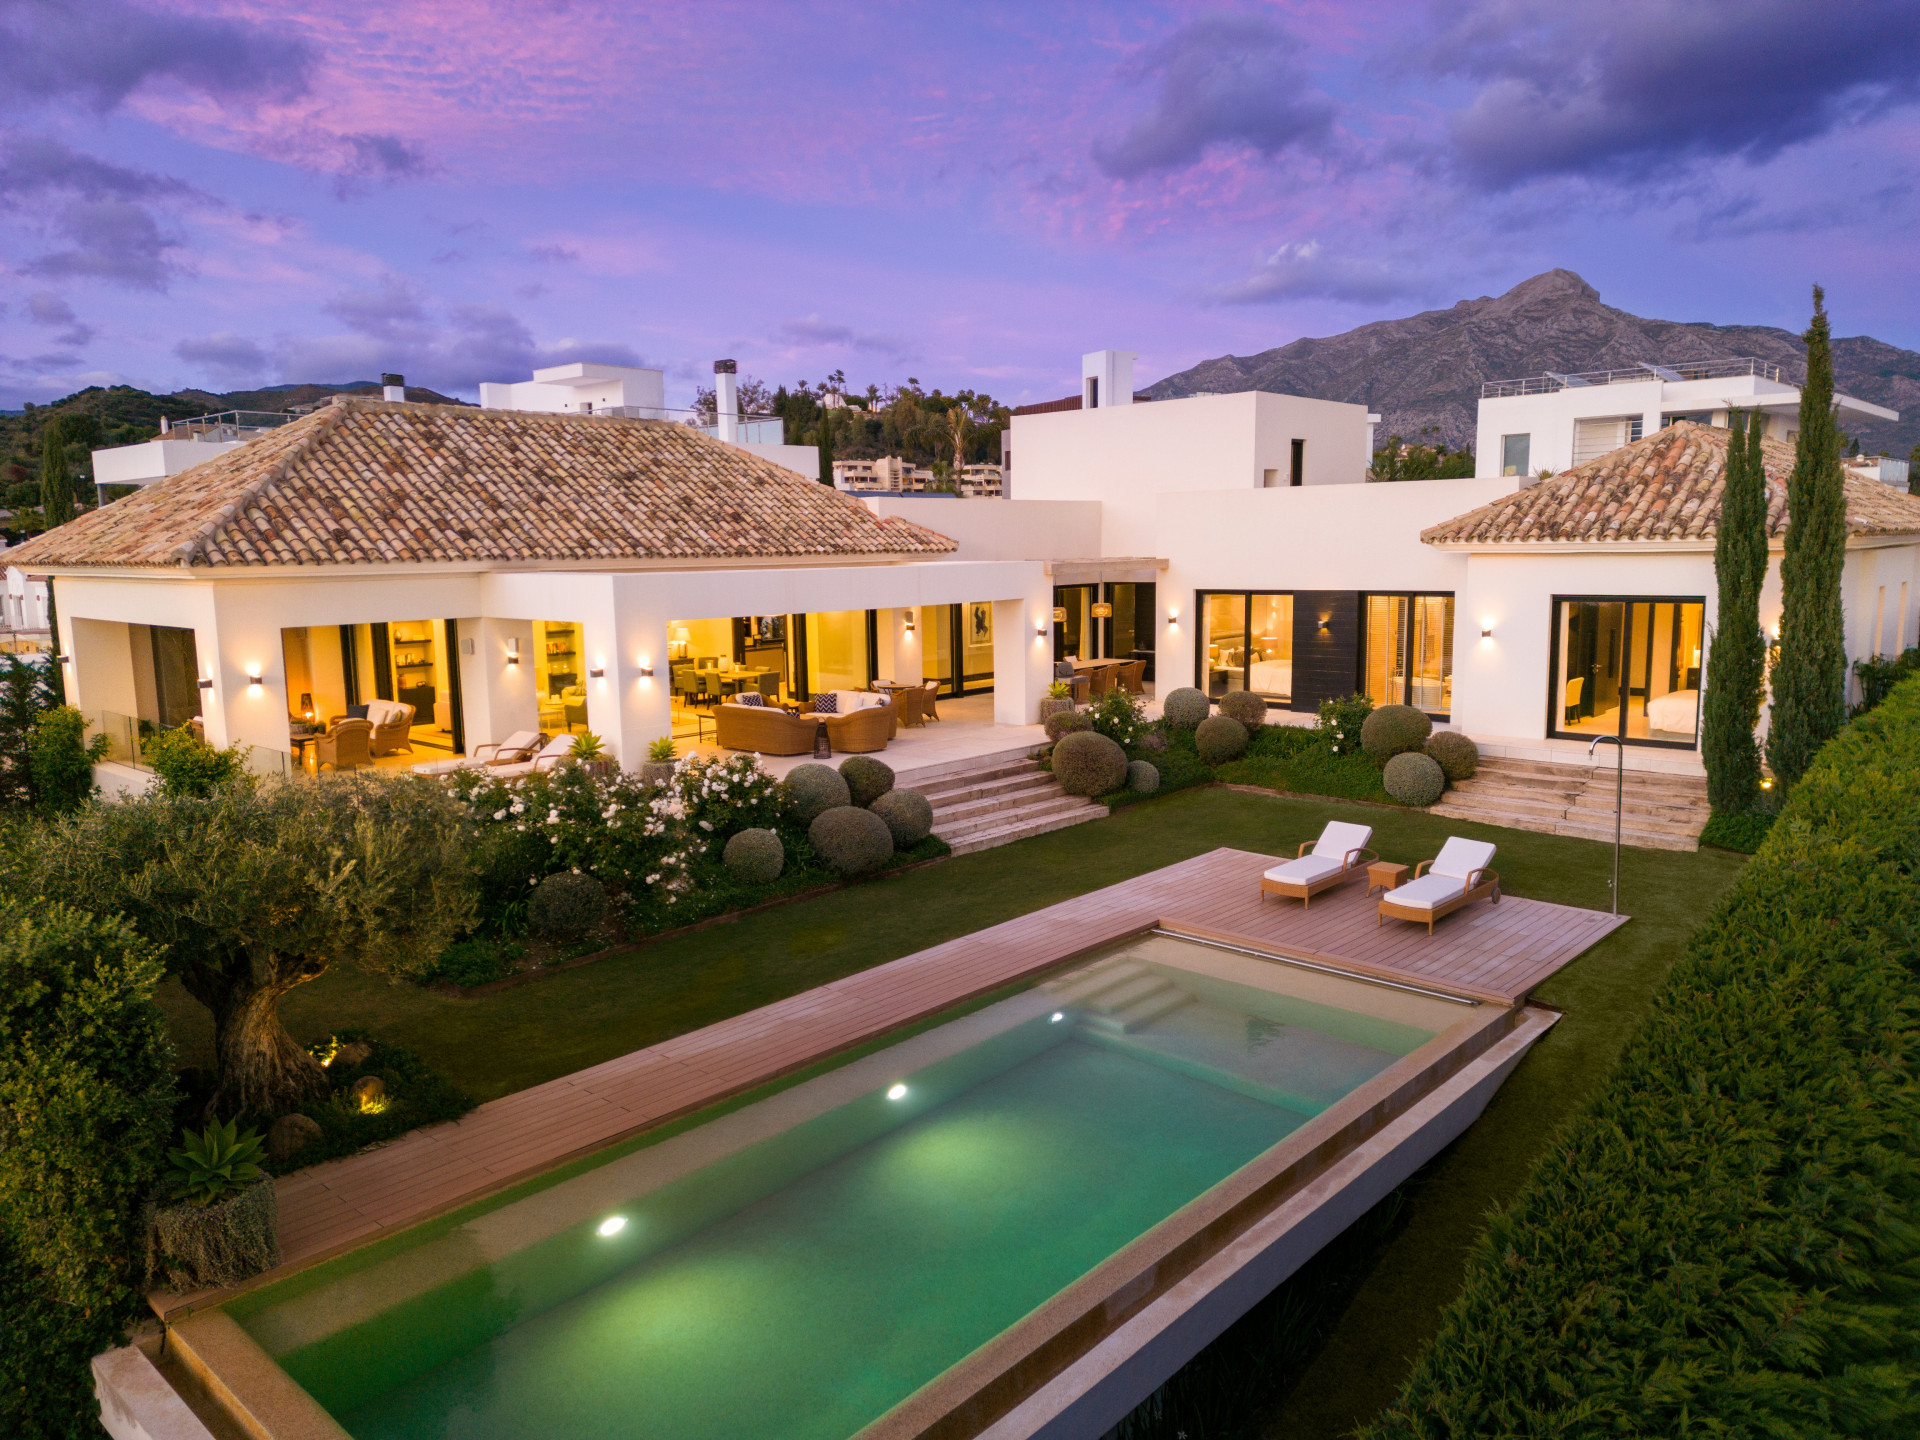 Preciosa villa de estilo mediterránea en el Valle del Golf de Marbella